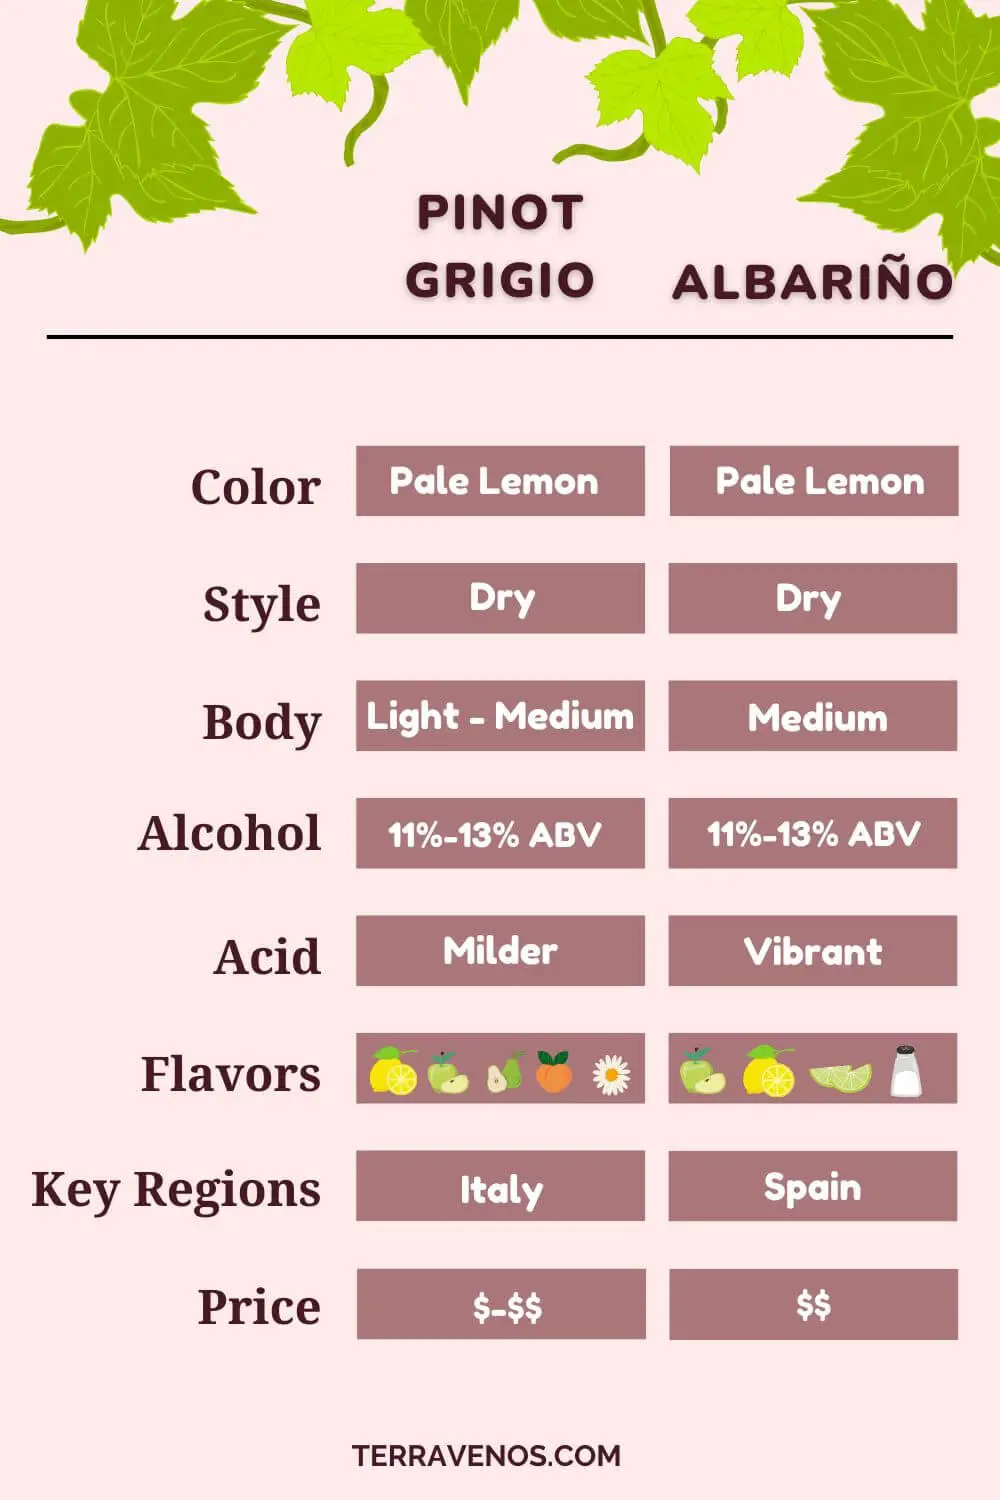 albarino vs pinot grigio side-by-side comparison